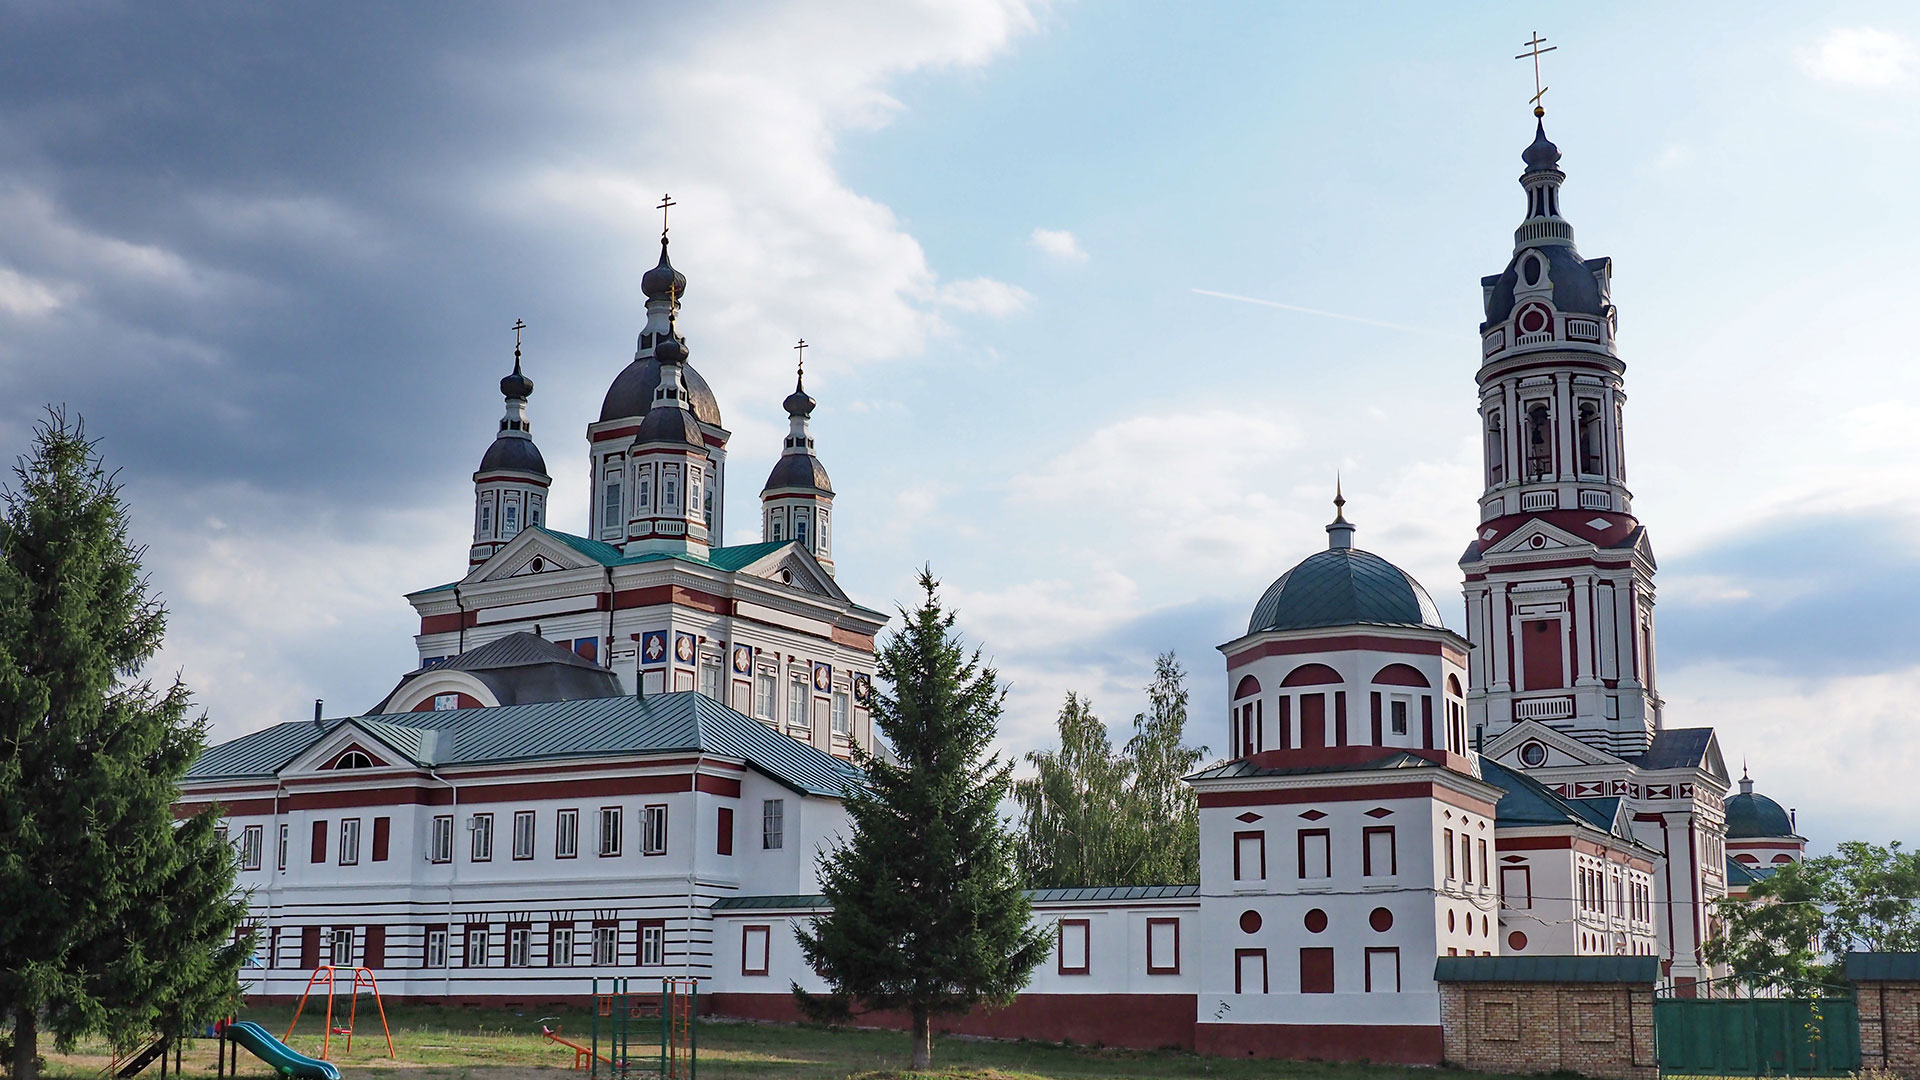 Фото Свято-Троицкого монастыря предоставлено туристско-информационным центром Пензенской области